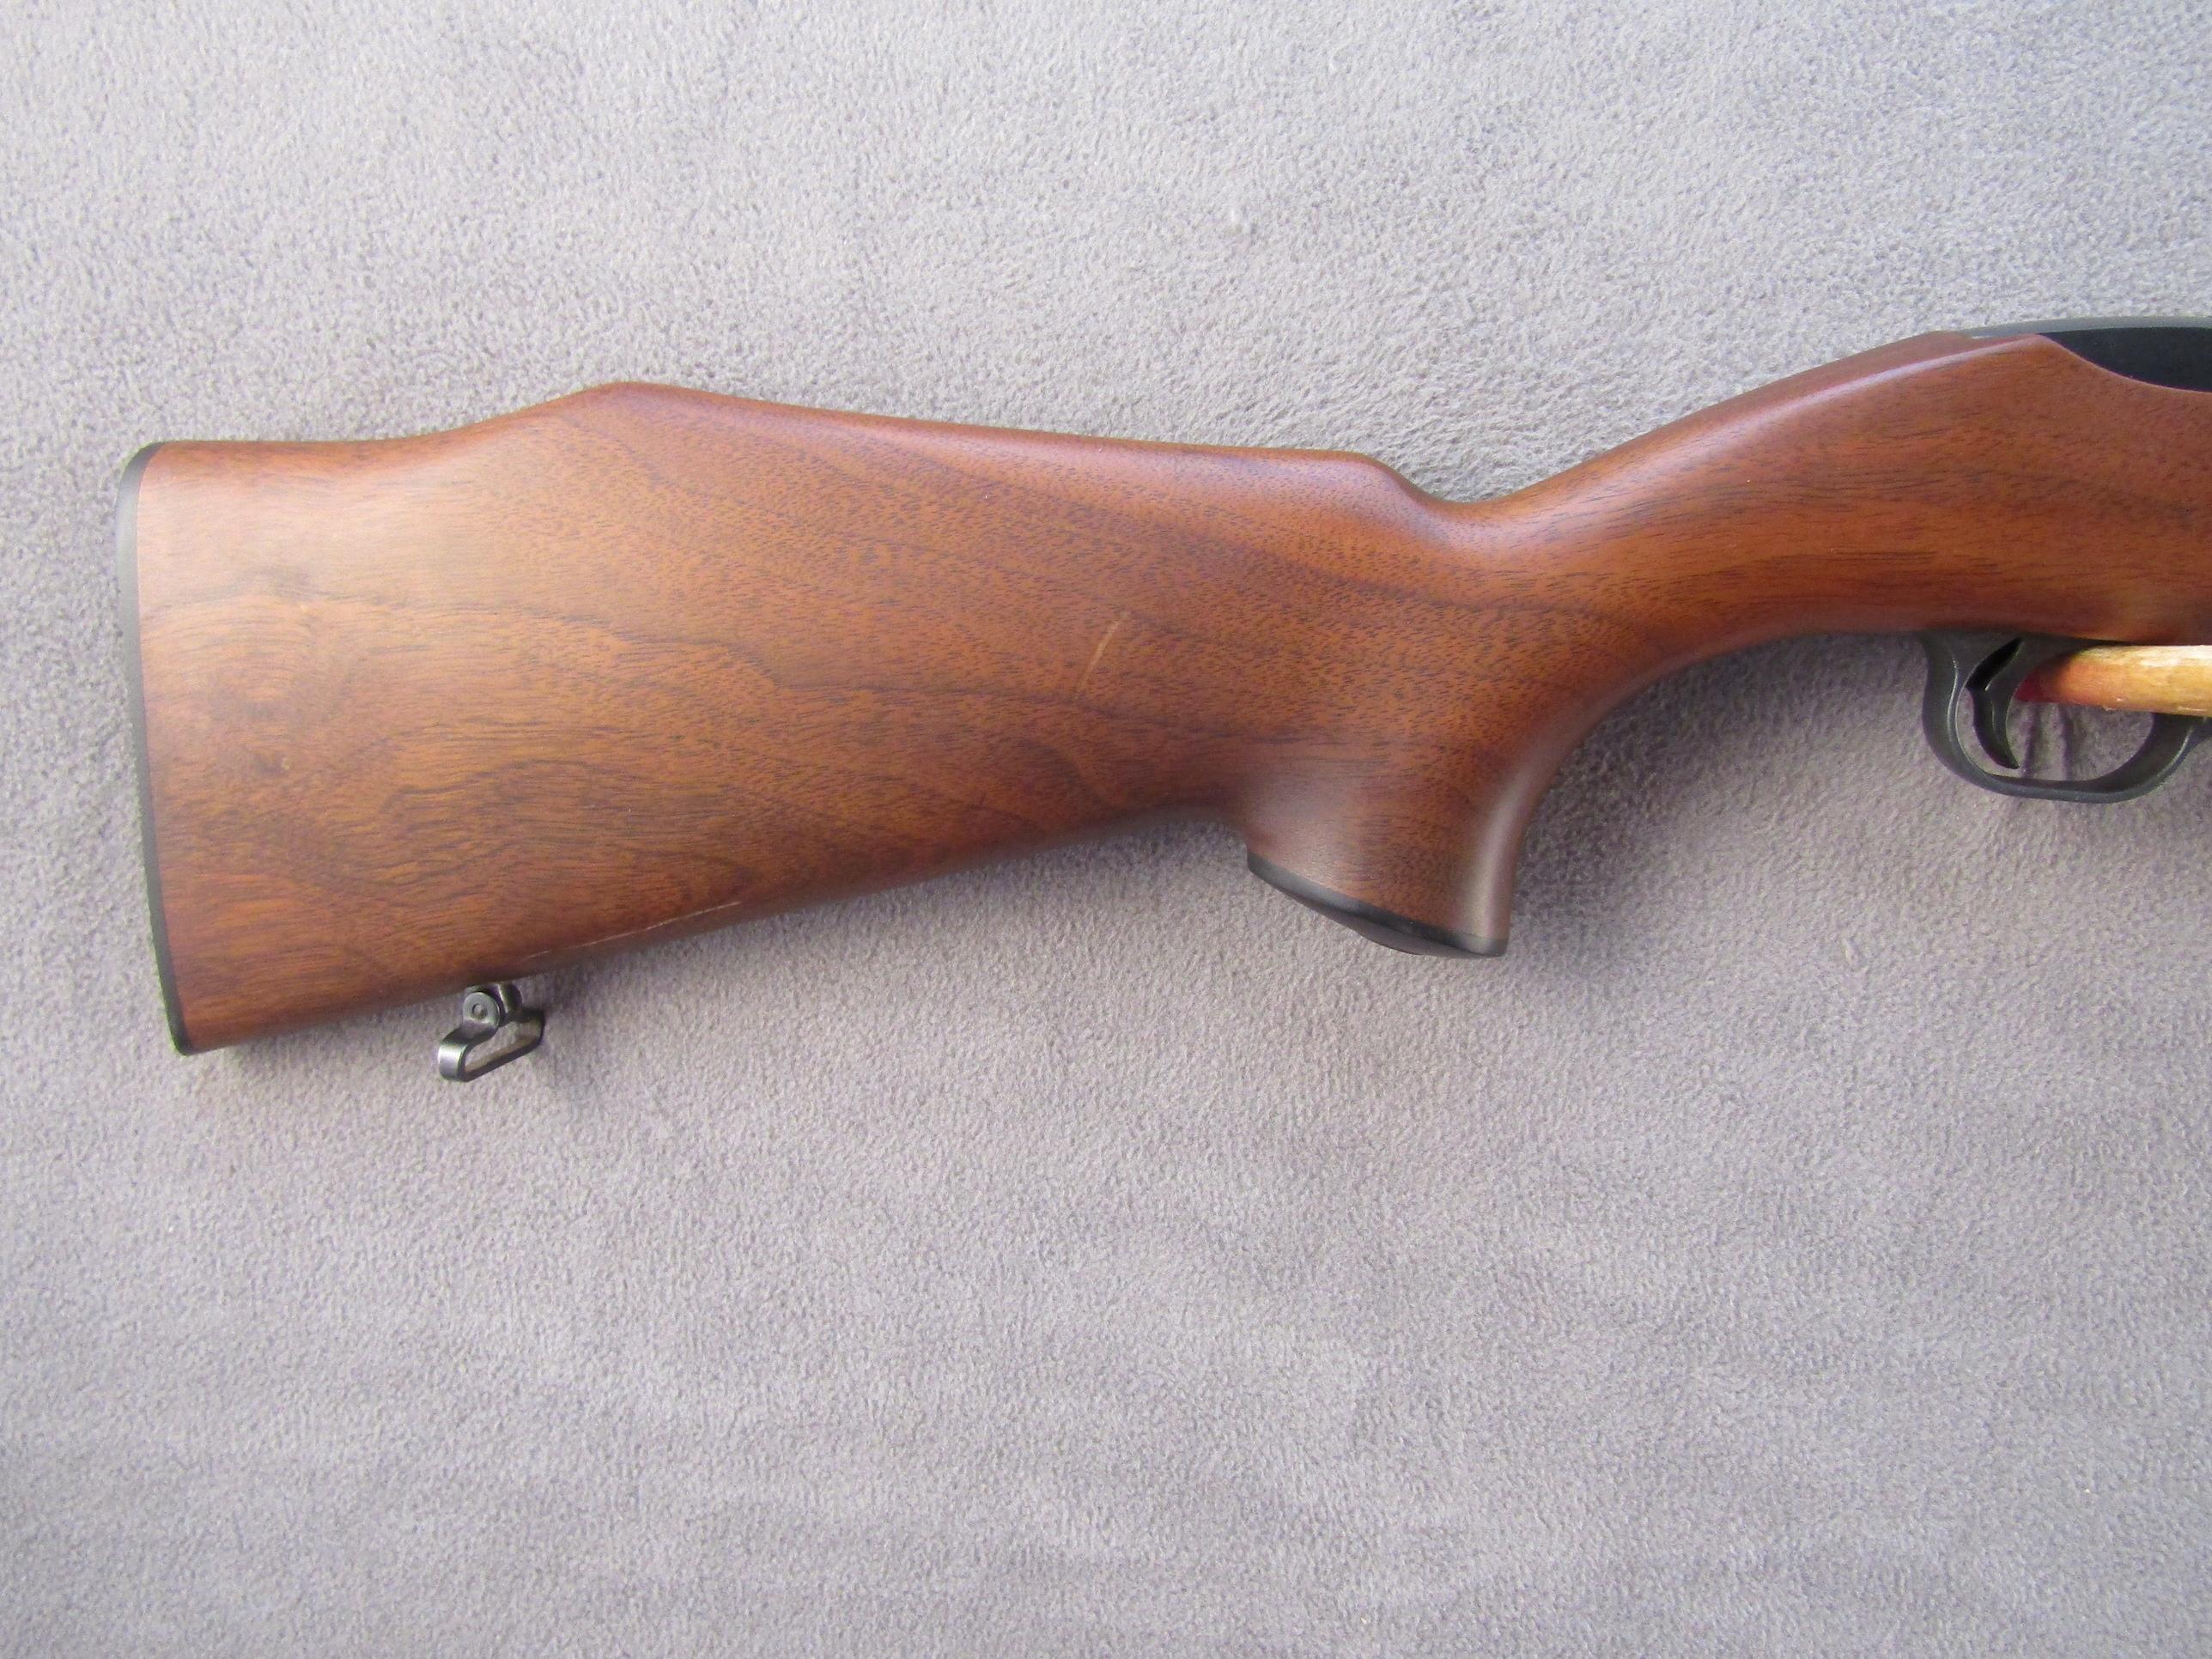 RUGER Model 10/22 Finger Groove, Single-Action Rifle, .22LR, S#110-05747